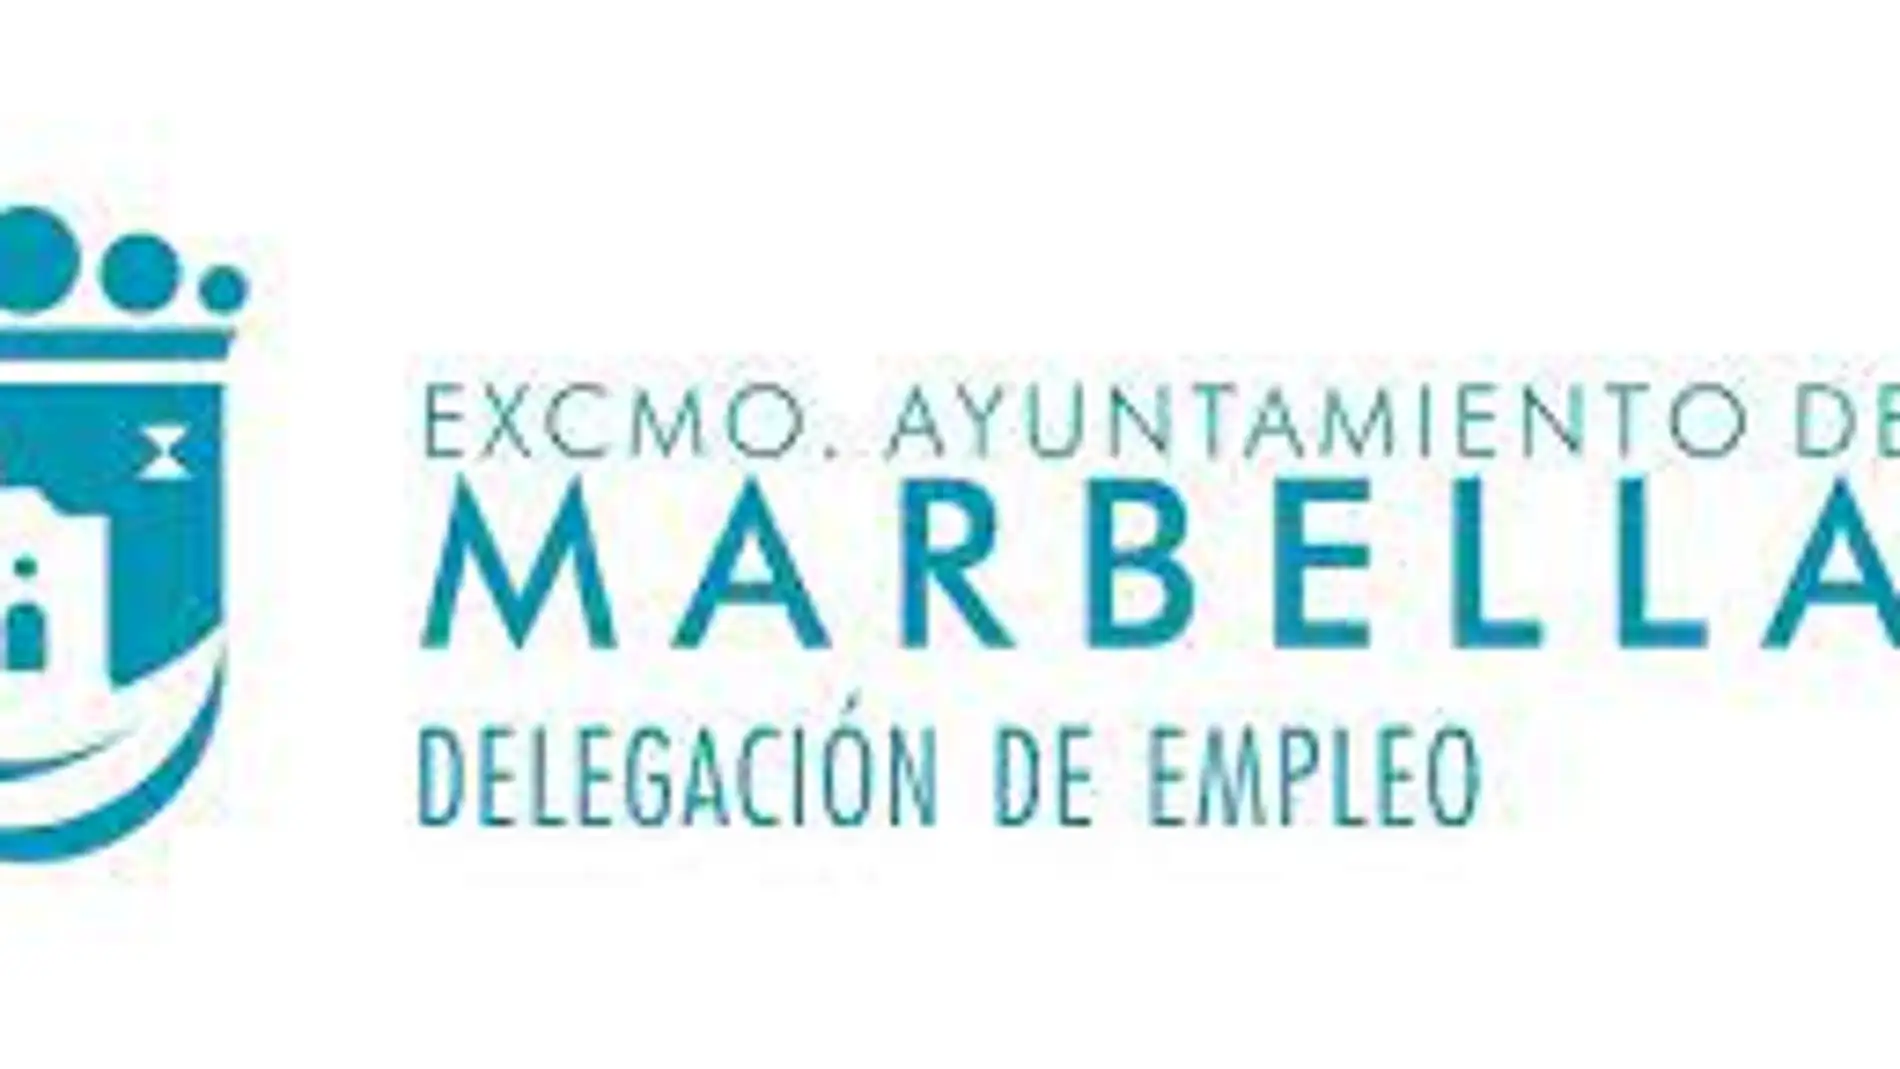 Delegación Empleo Marbella